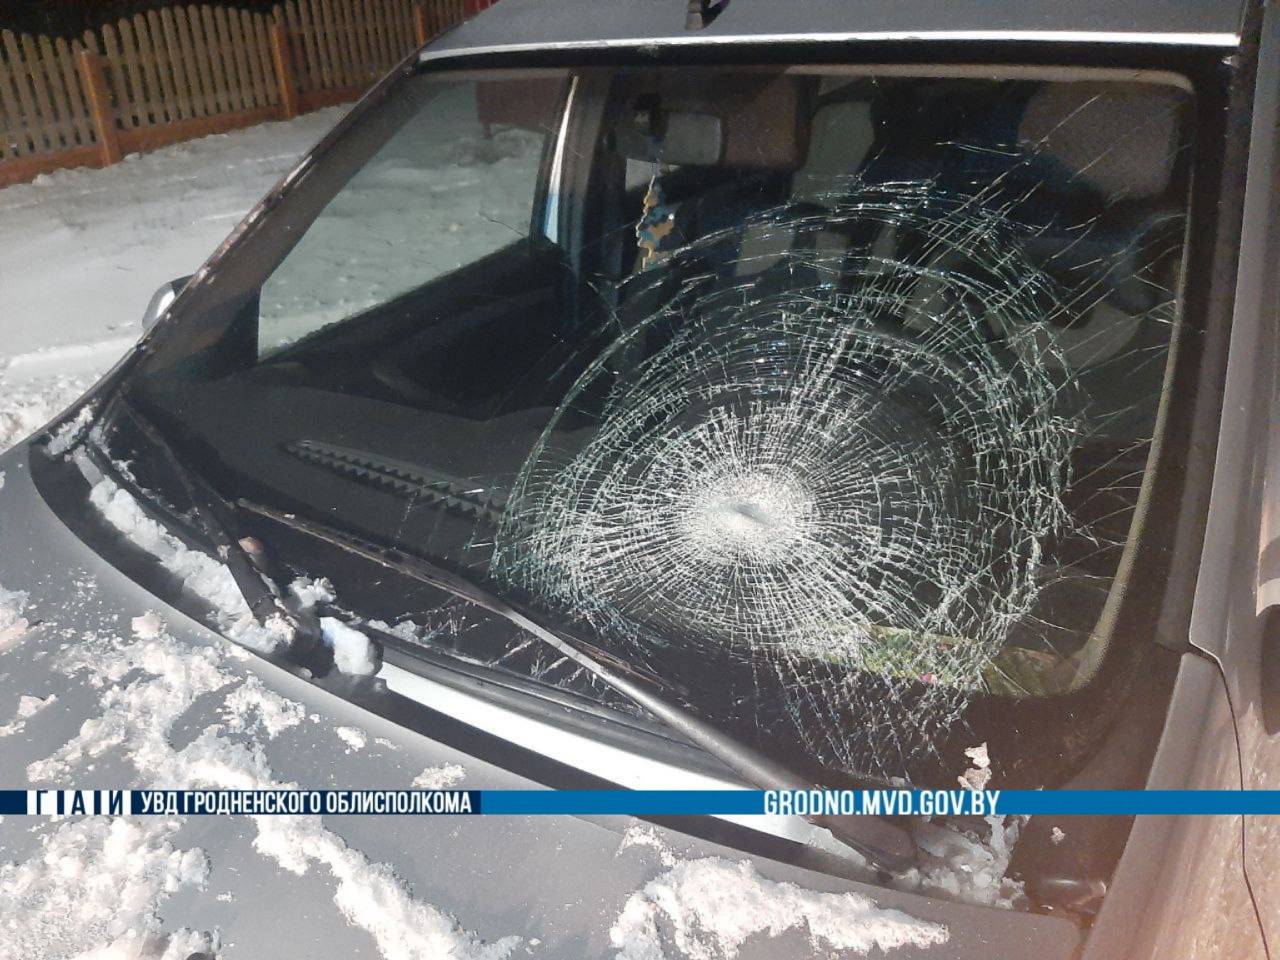 В Гродно и области три человека доставили неприятности водителям, оказавшись в больницах с травмами: обзор аварий за сутки